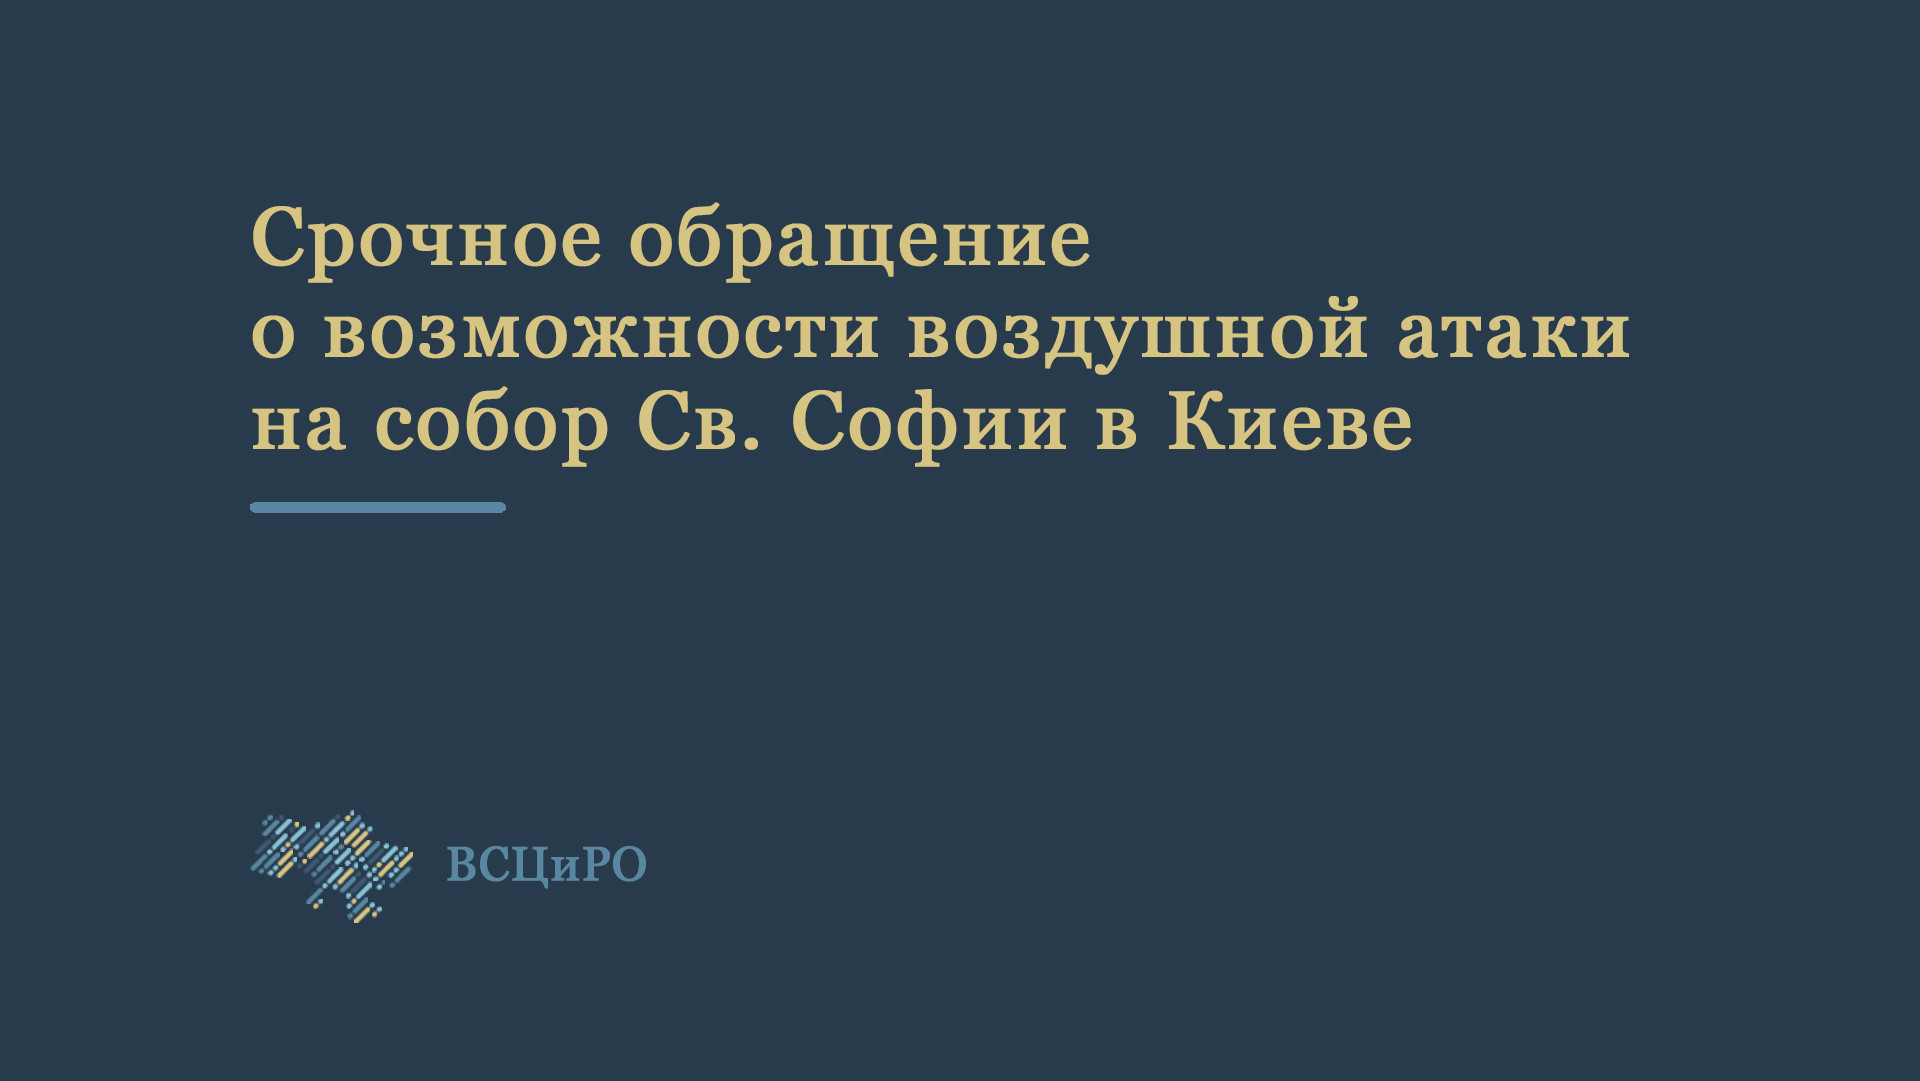 Срочное обращение ВСЦиРО о возможности воздушной атаки на собор Св. Софии в Киеве